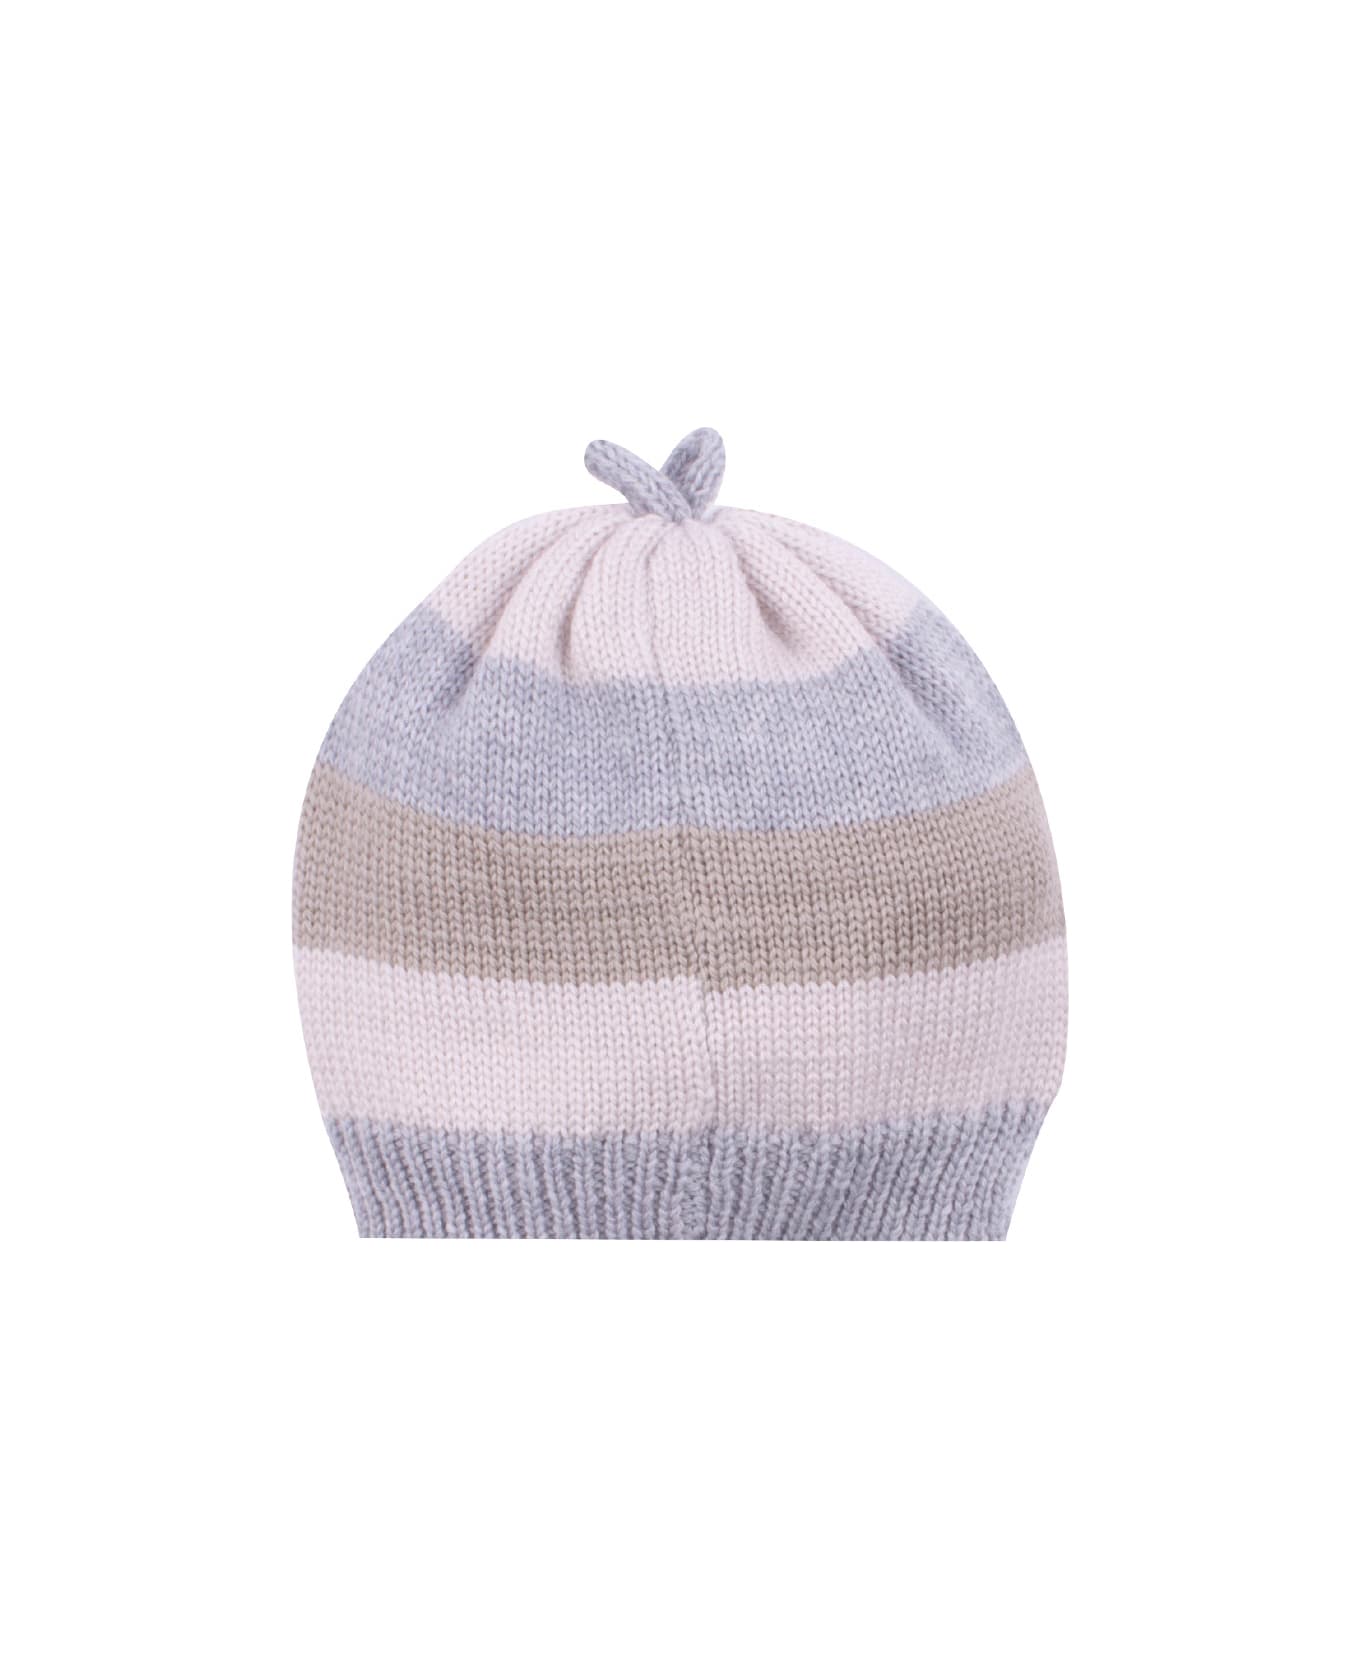 Piccola Giuggiola Wool Knit Hat - Multicolor